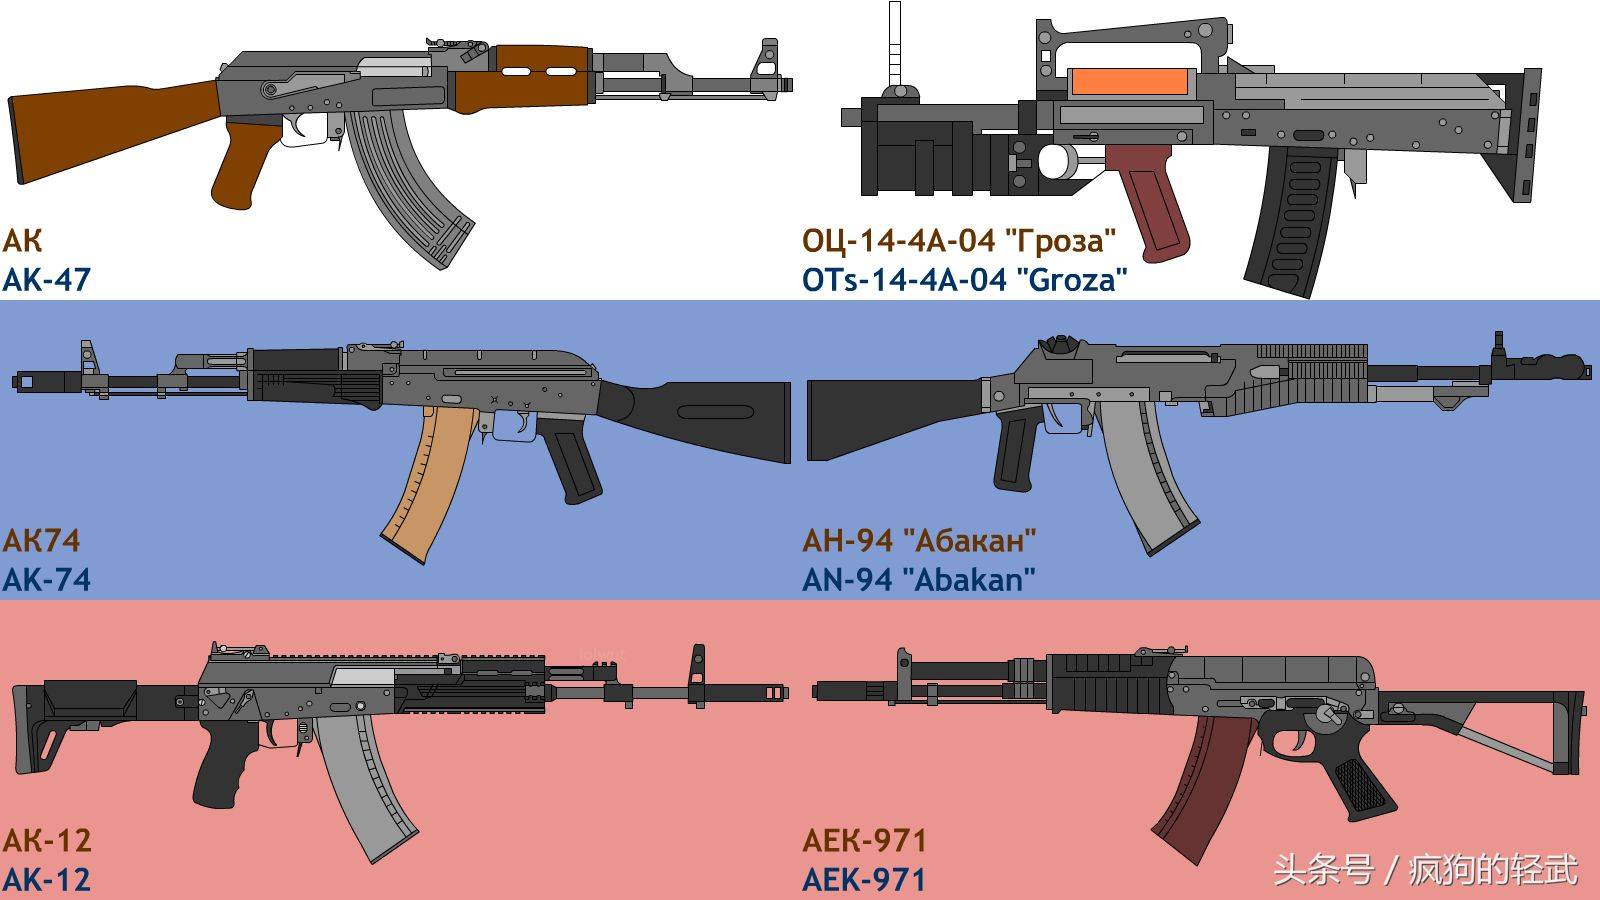 而在苏联,根据各地使用情况改进ak系列枪械,研发新的ak衍生枪械的工作